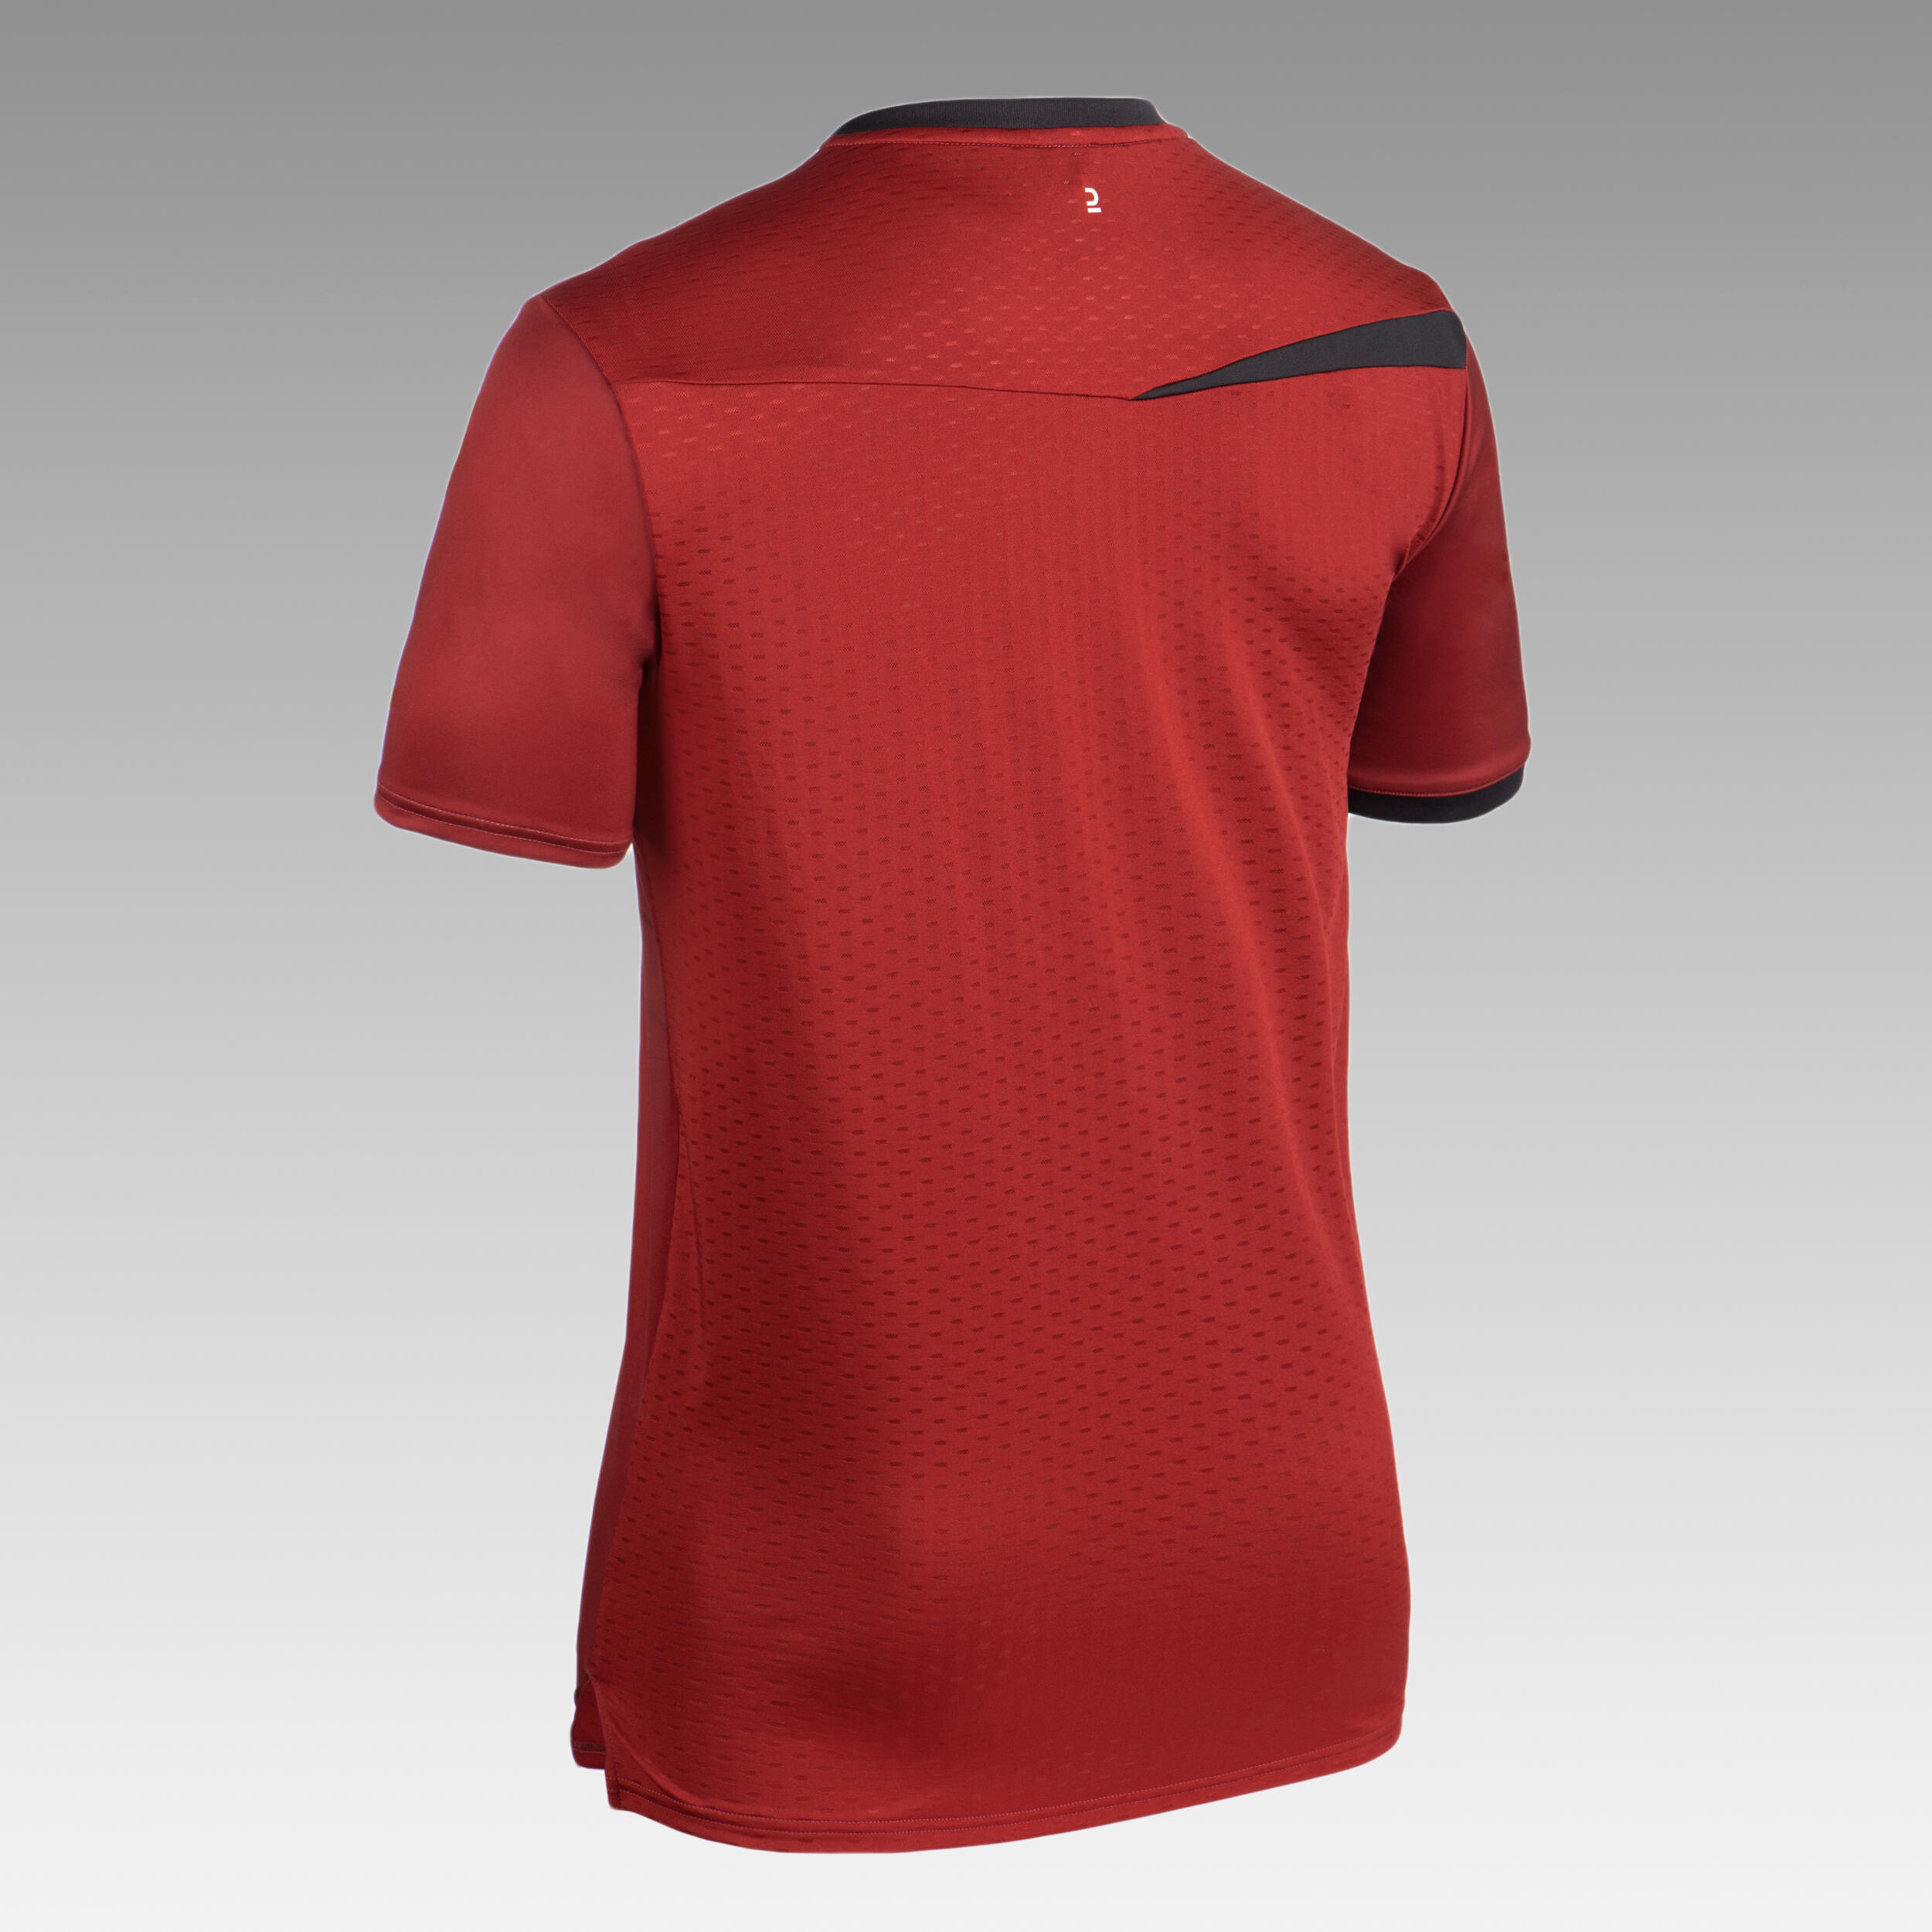 Men's Short-Sleeved Handball Jersey H500 - Red/Black 3/12